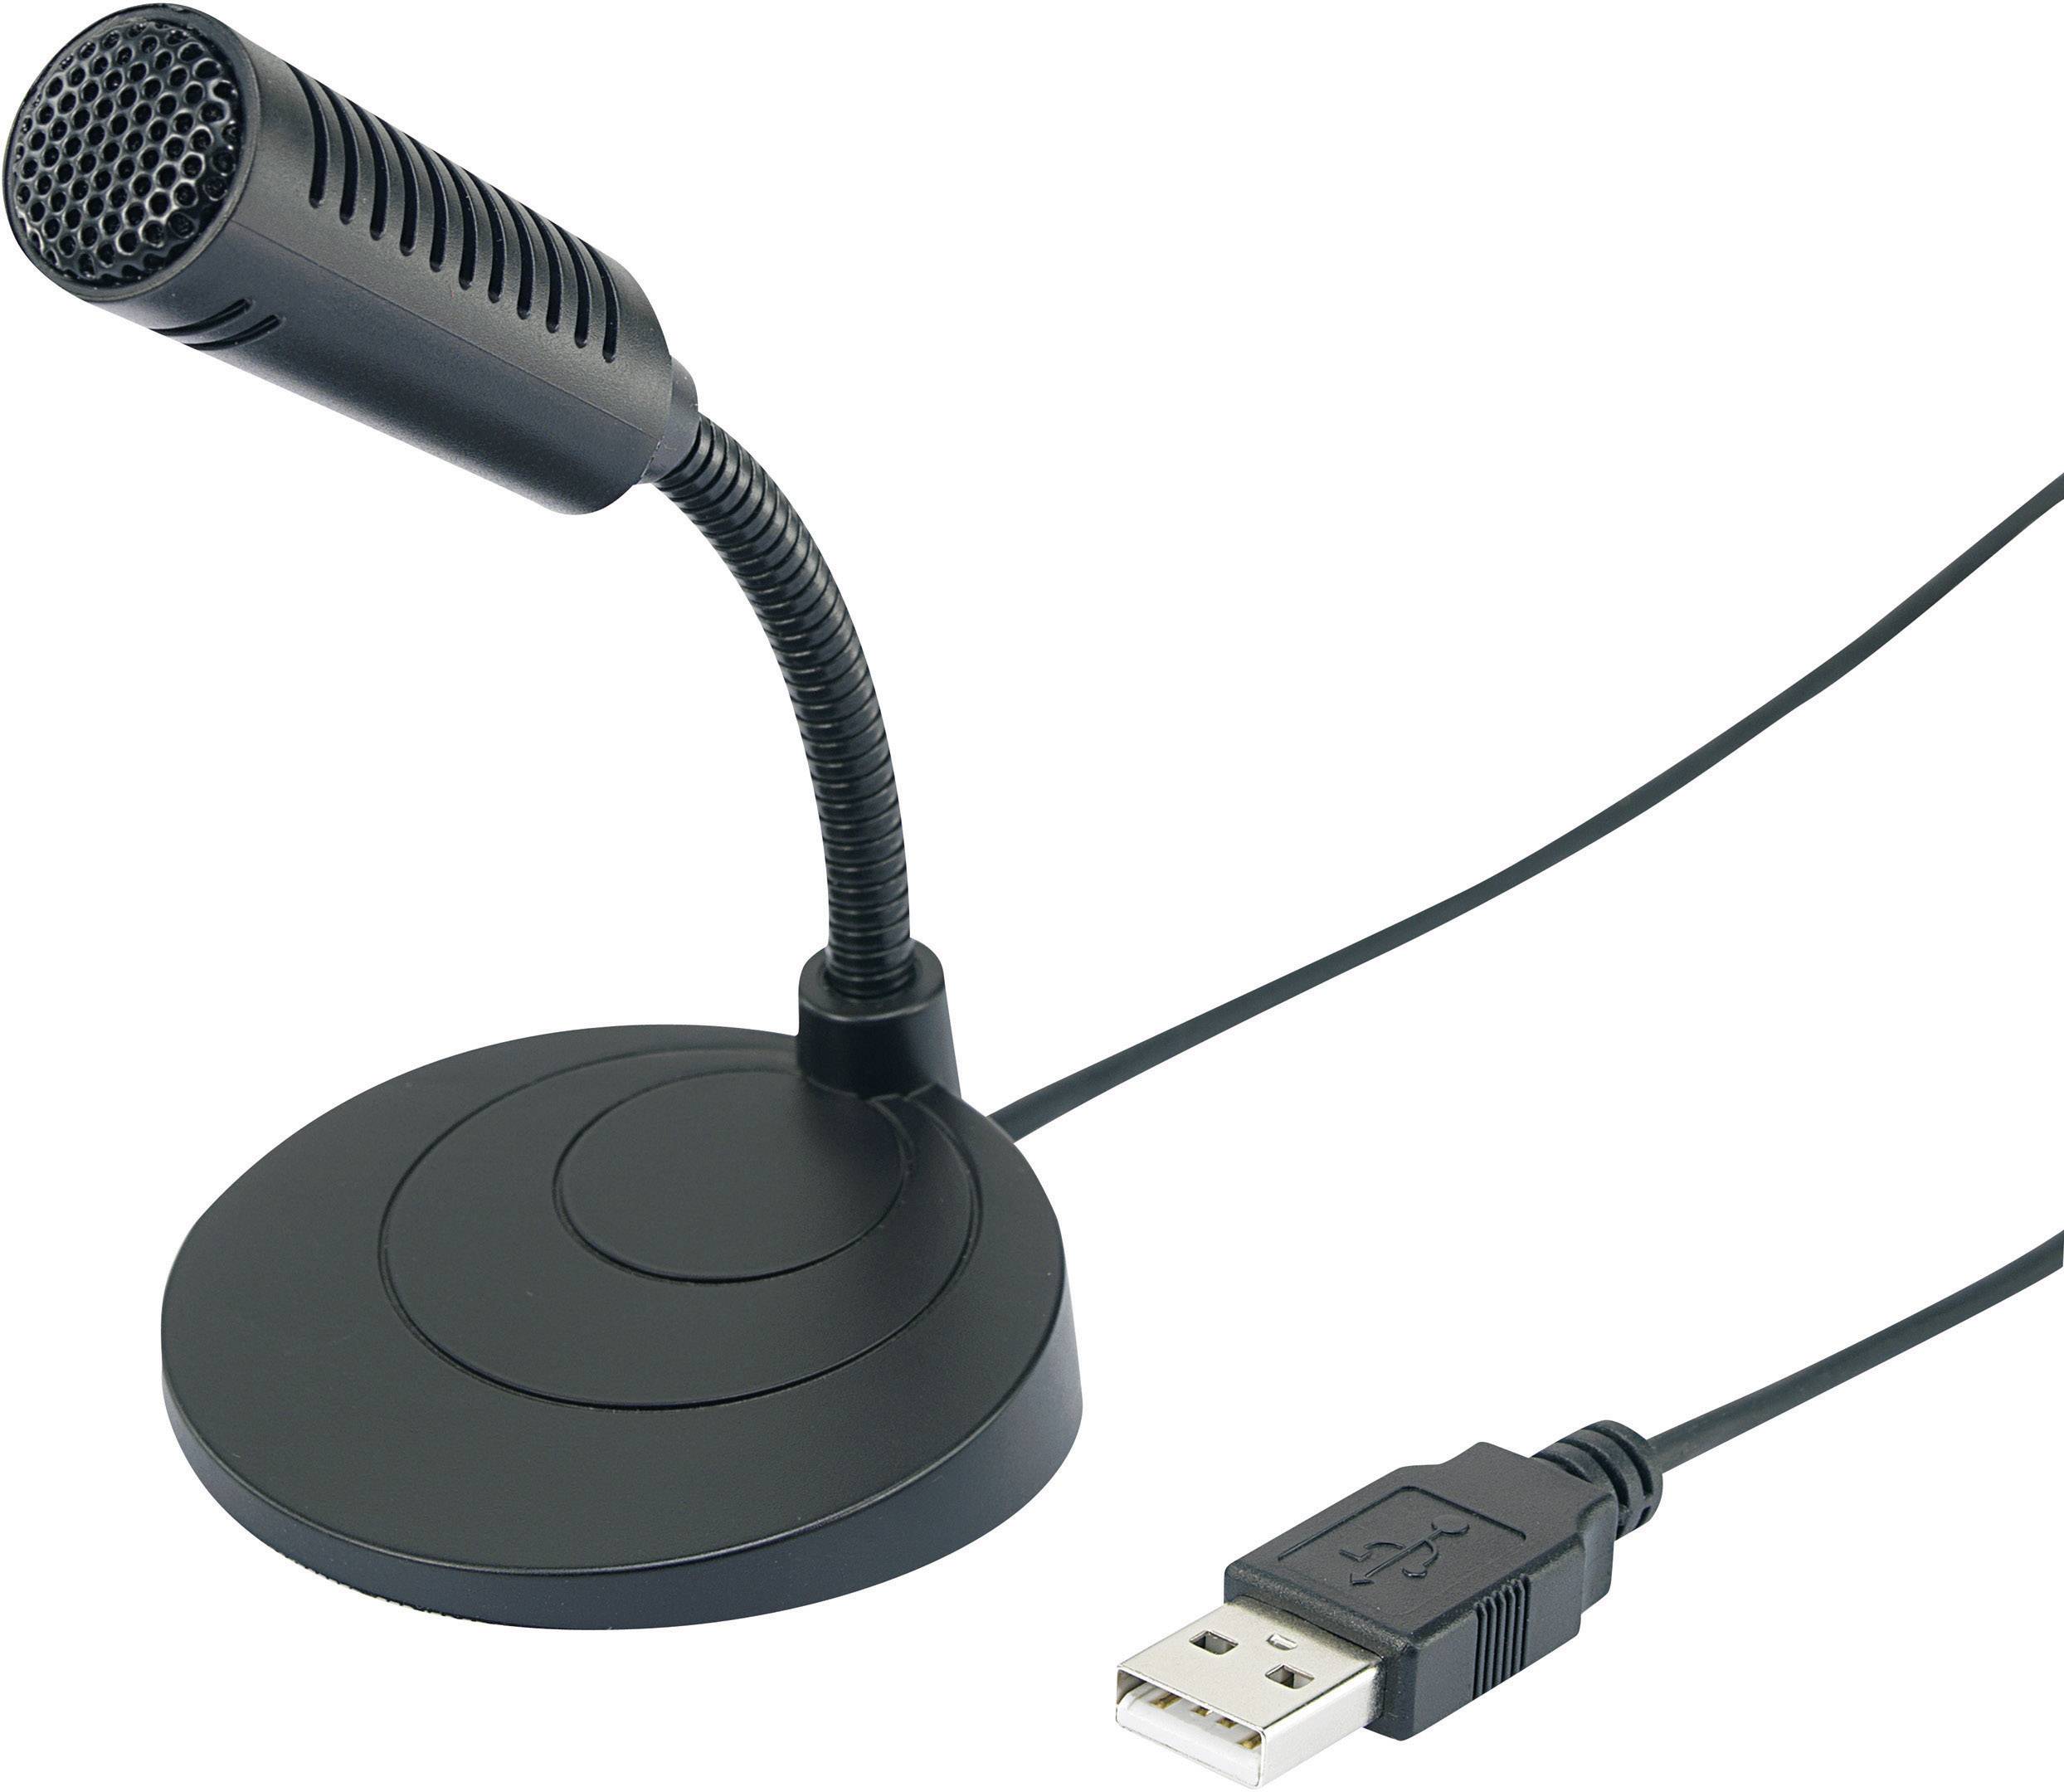 Не видит usb микрофон. Юсб микрофон роуд. Kingway микрофон USB. Микрофон для ПК (USB) ot-pcs01. Pm80 микрофон для ПК.